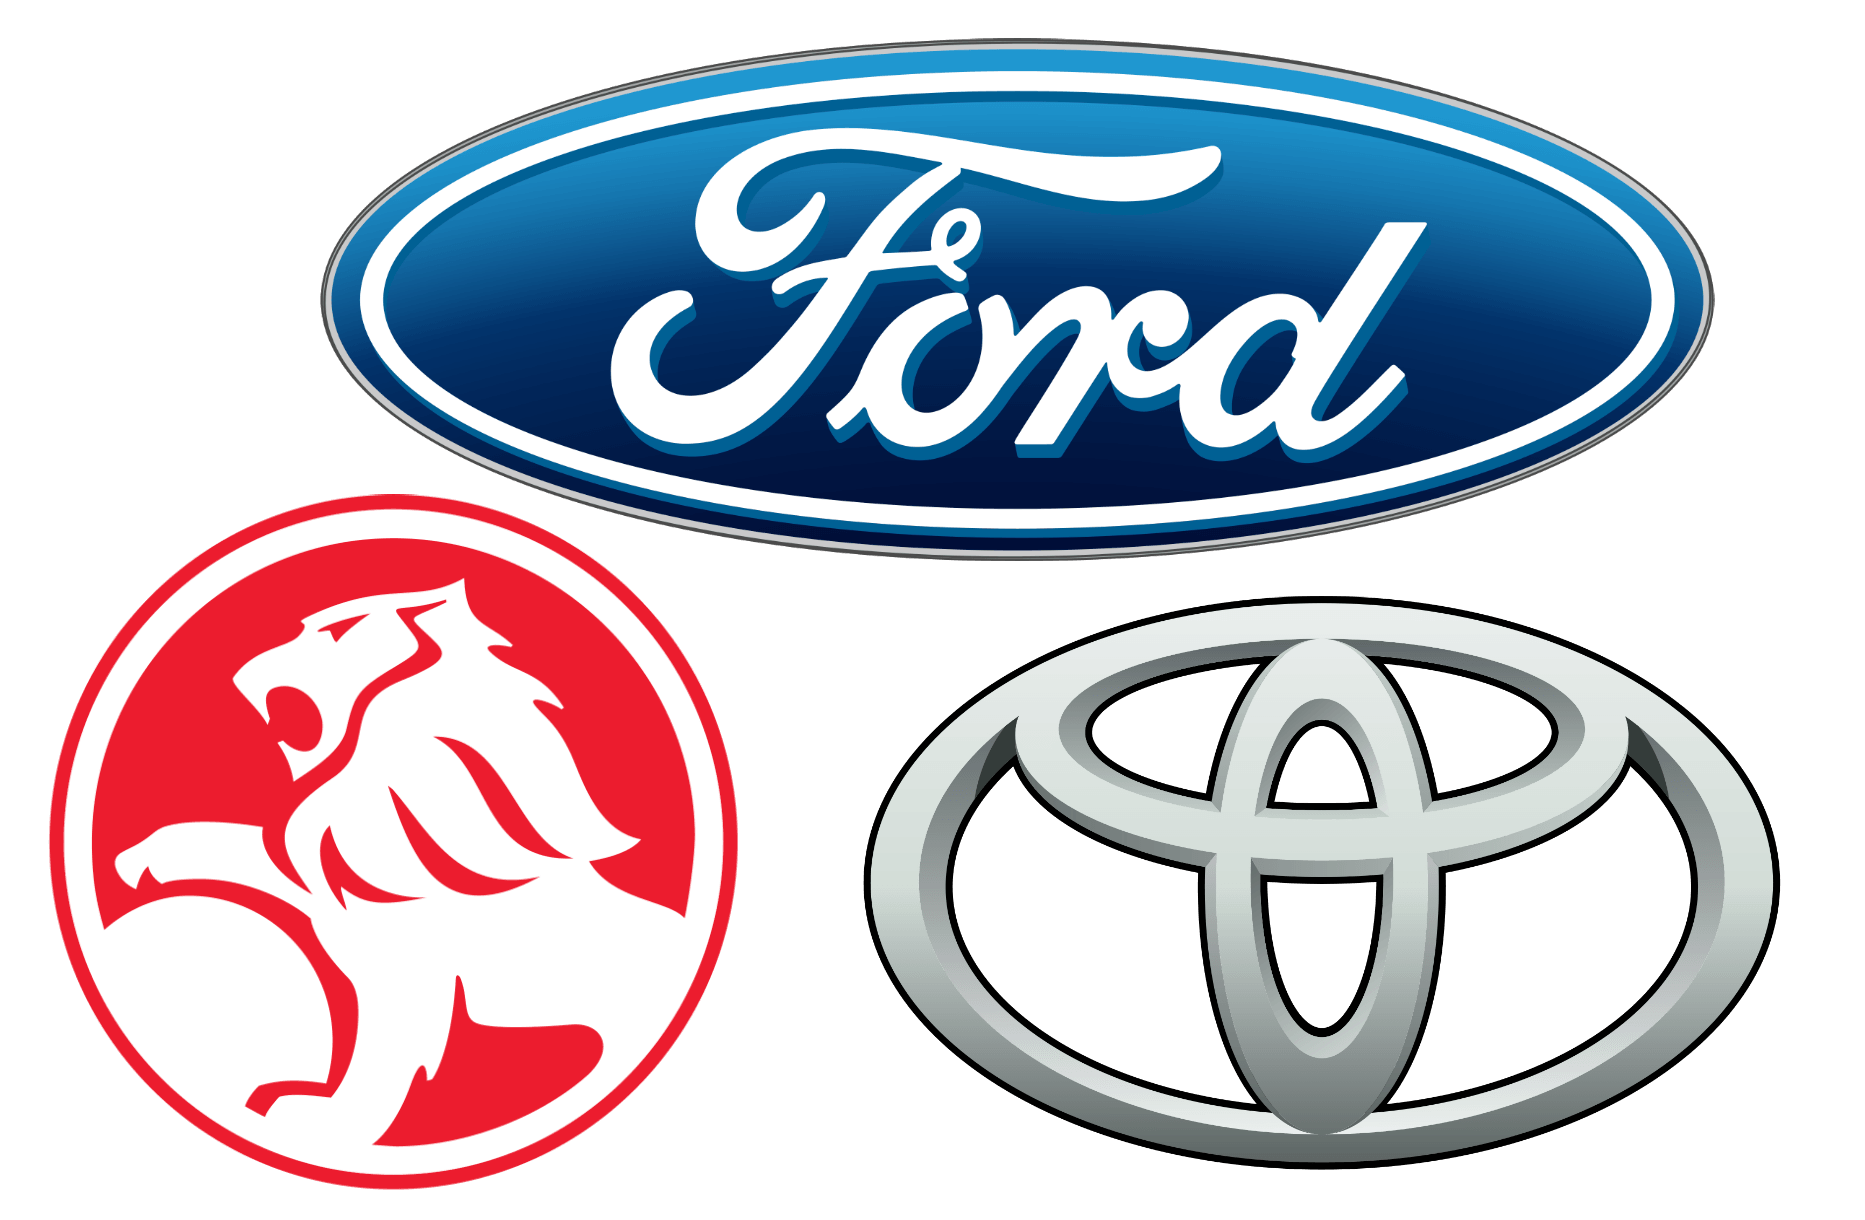 Foreign Auto Logo - Australian Car Brands, Companies and Manufacturers | Car Brand Names.com